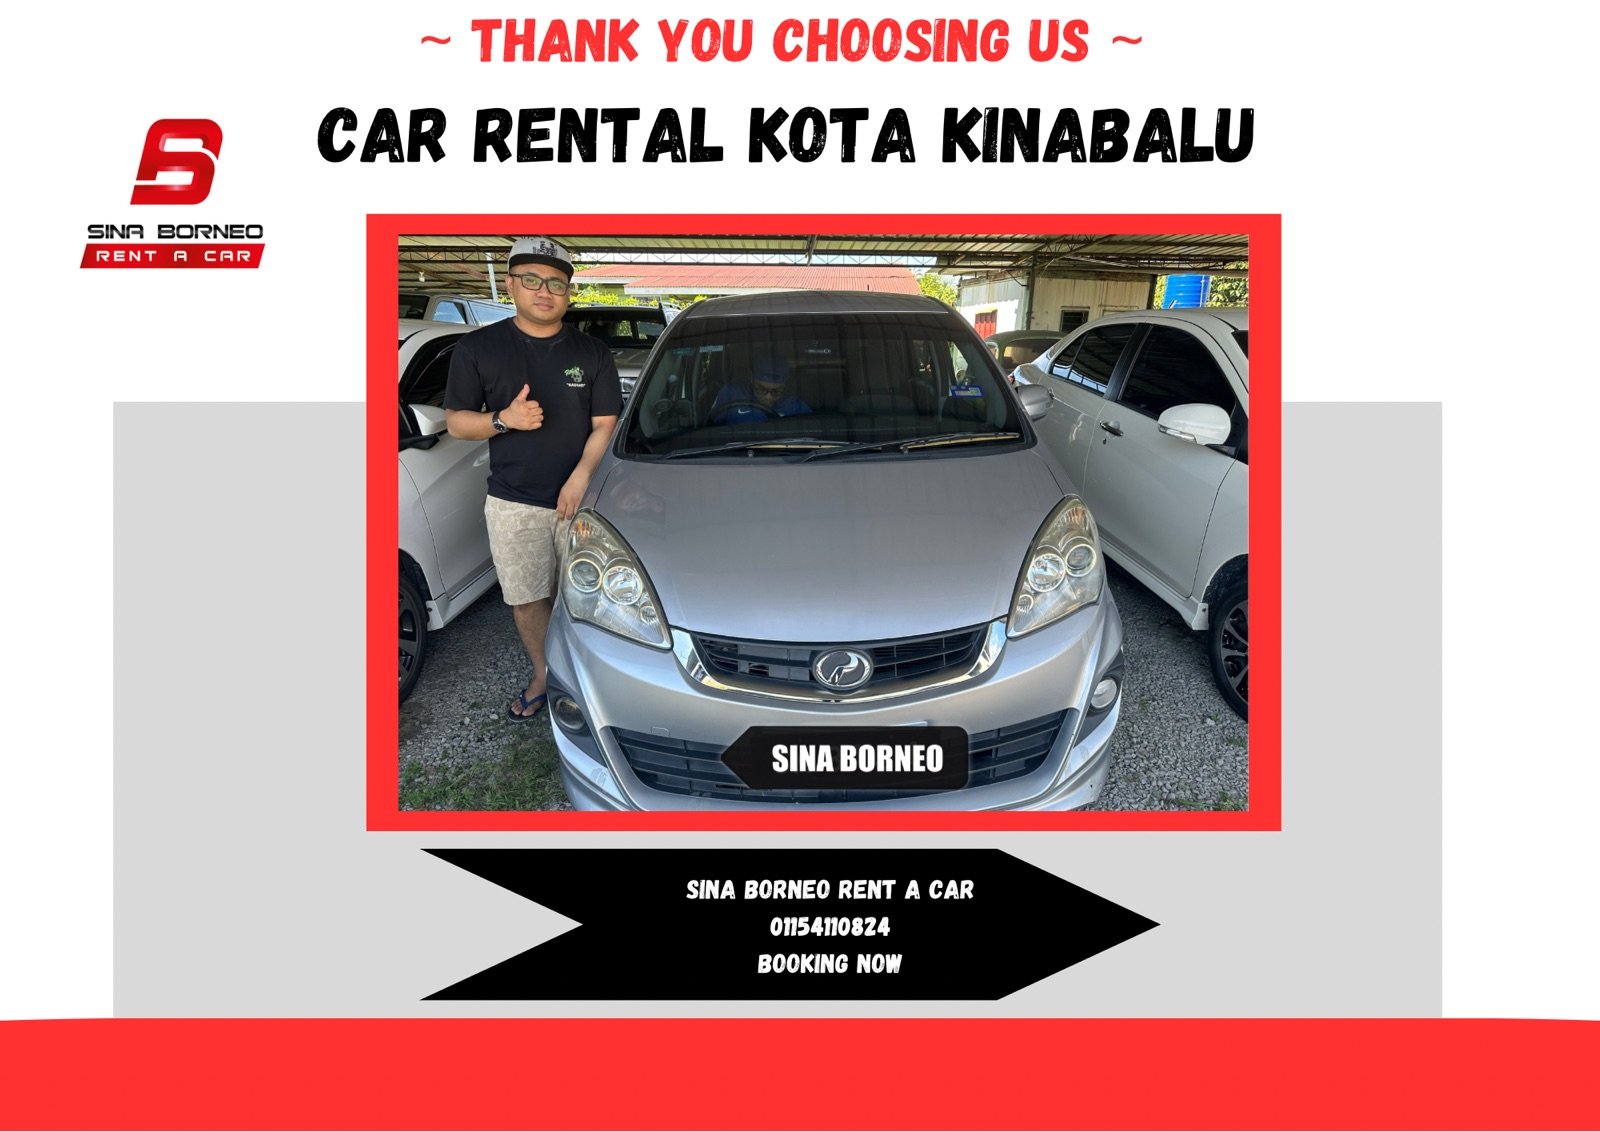 Car Rental Kota Kinabalu's Logo